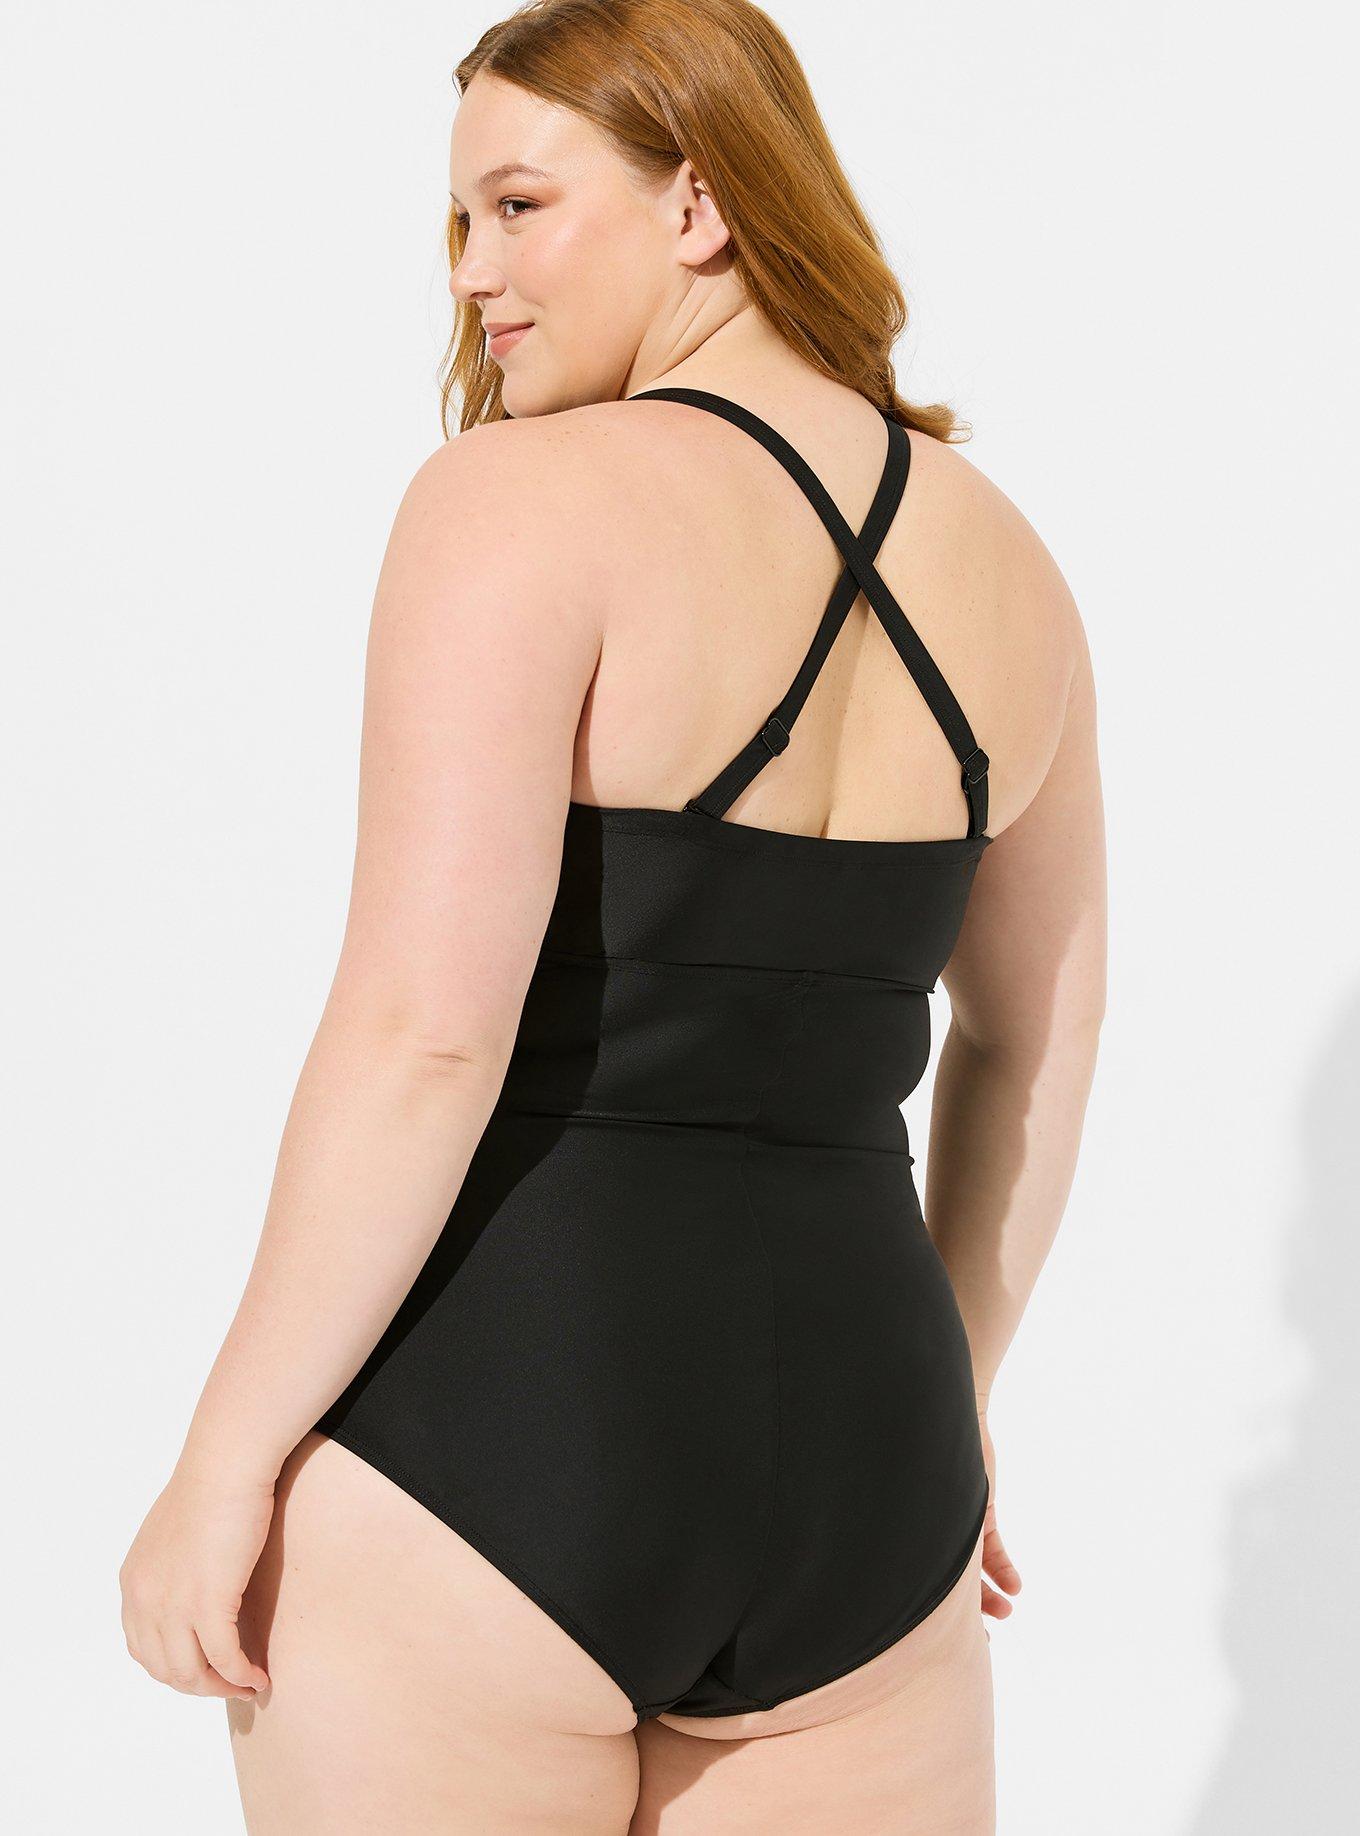 Plus Size - Black & Multi Fruit Lattice Push-Up Balconette Bikini Top -  Torrid